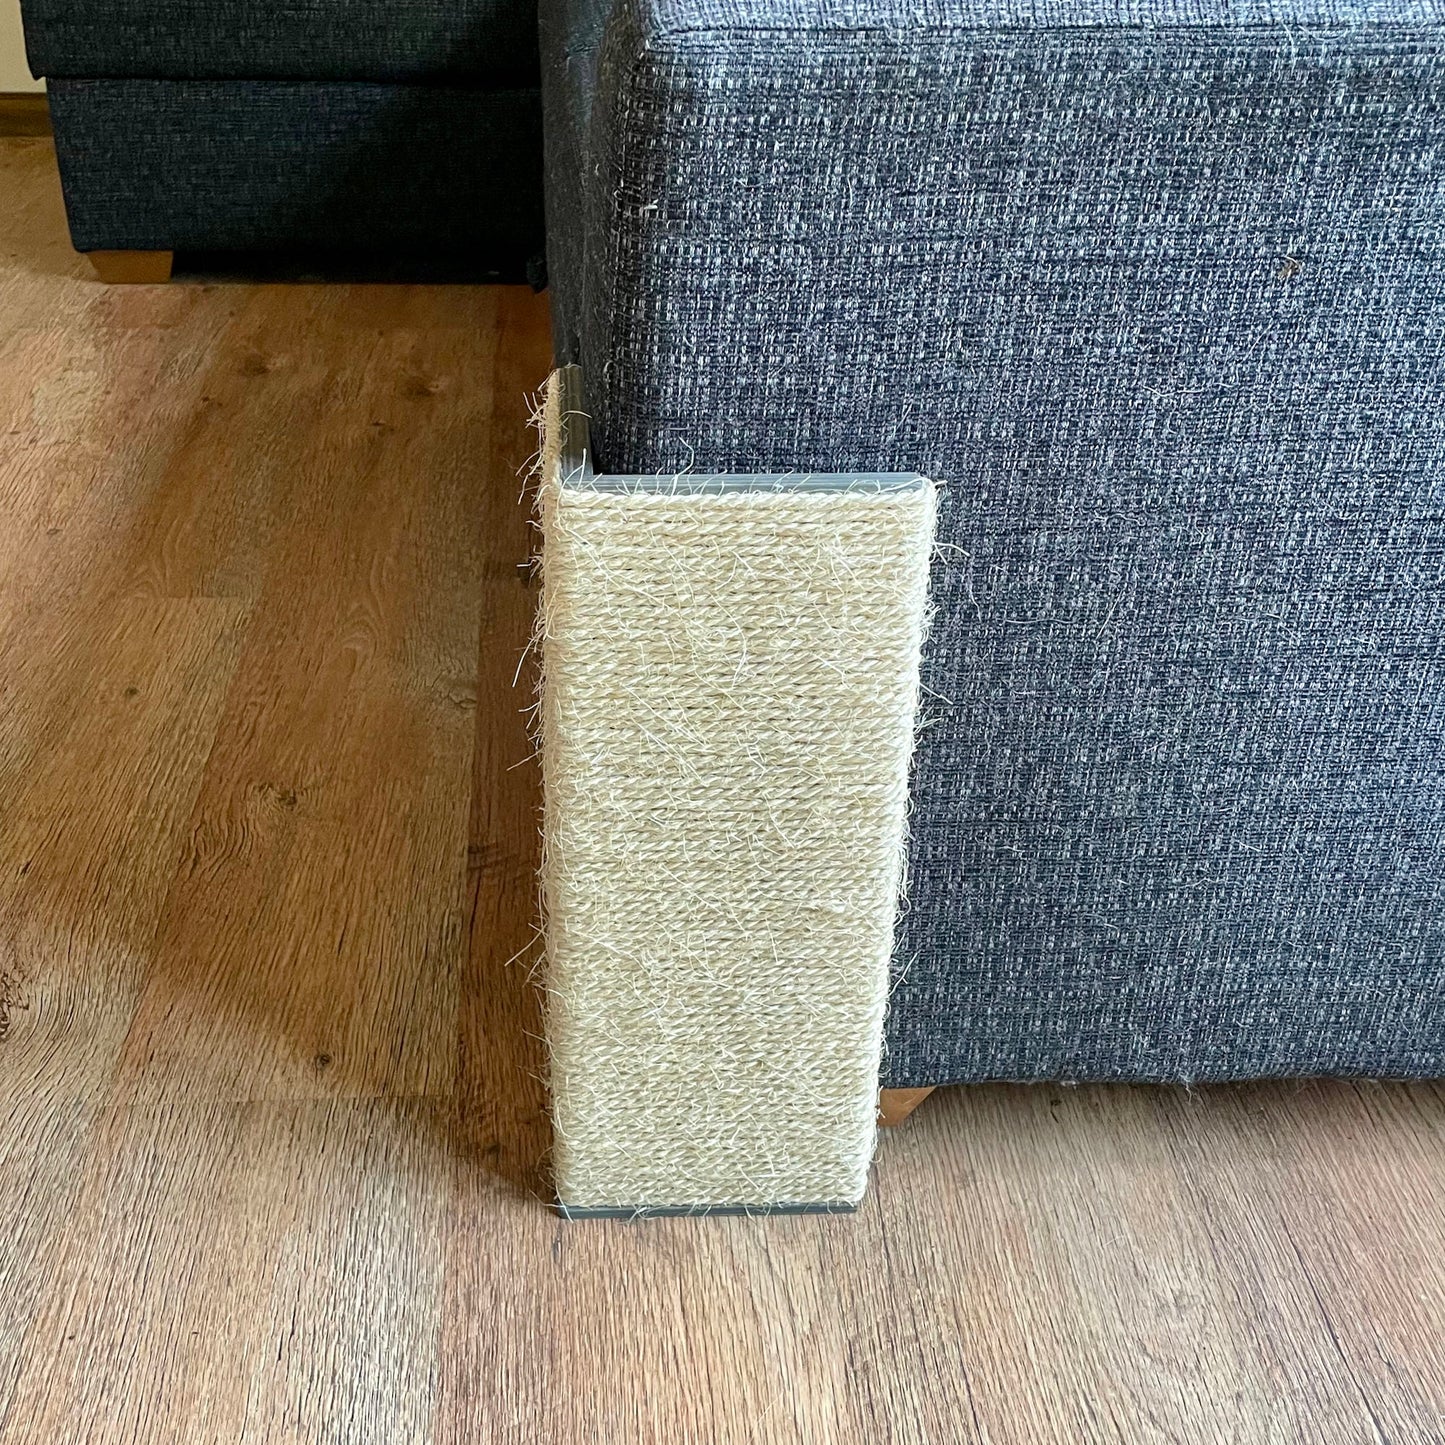 Sofa Corner Cat Scratcher